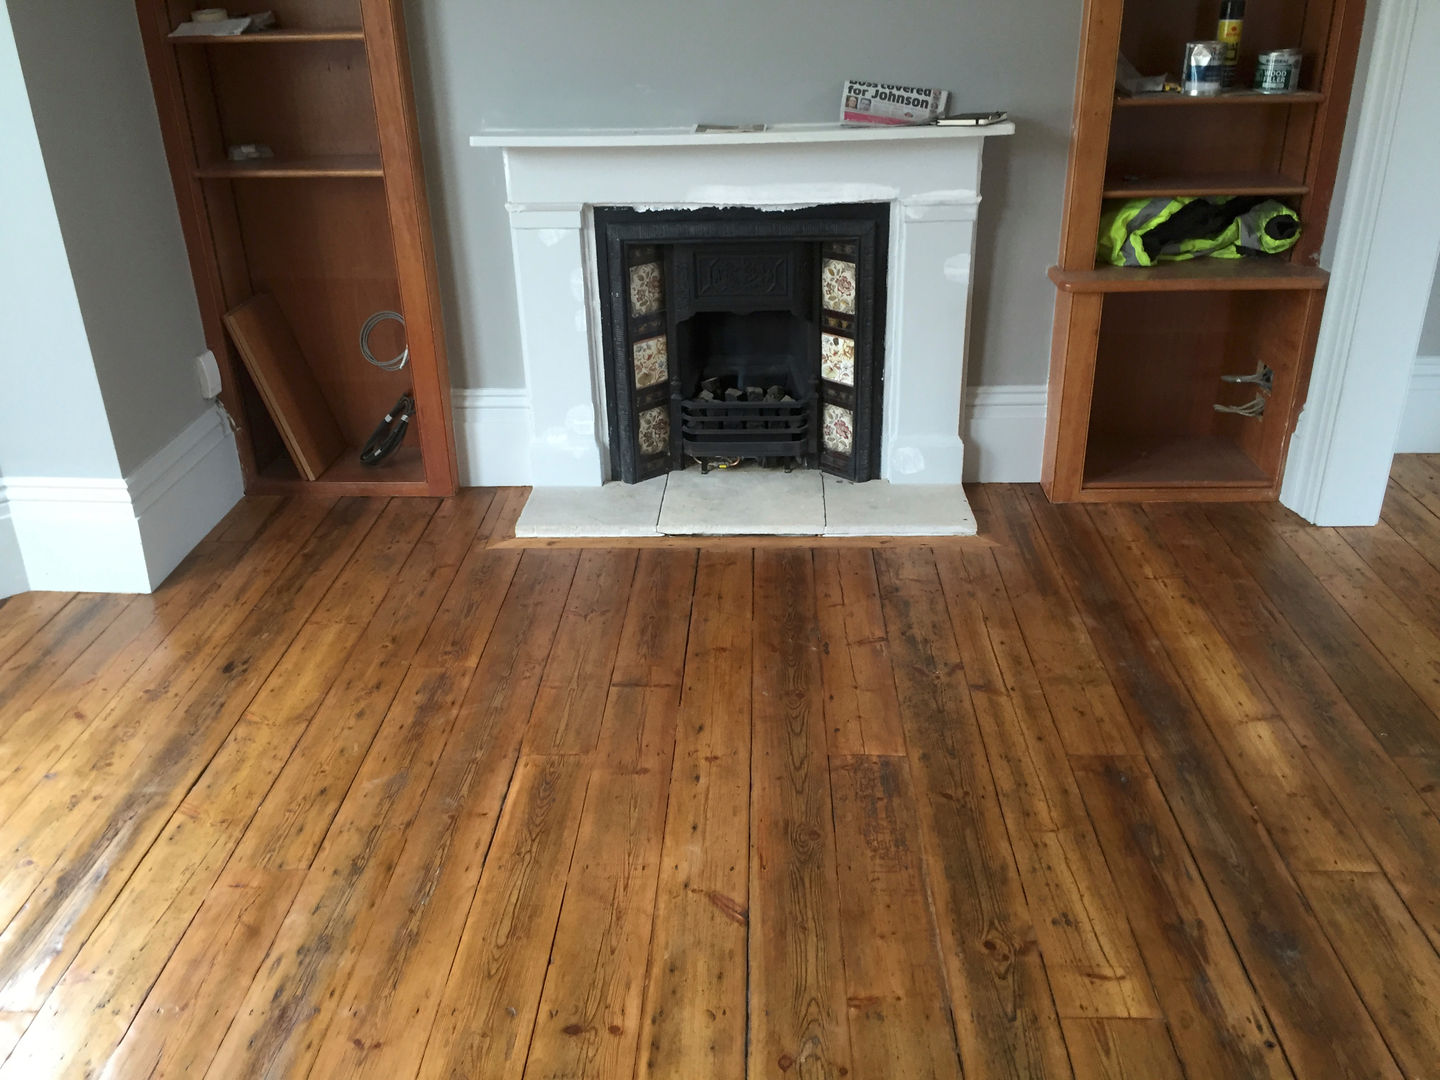 Reclaimed Pine floorboards The British Wood Flooring Company Ruang Keluarga Klasik Reclaimed Pine floorboards